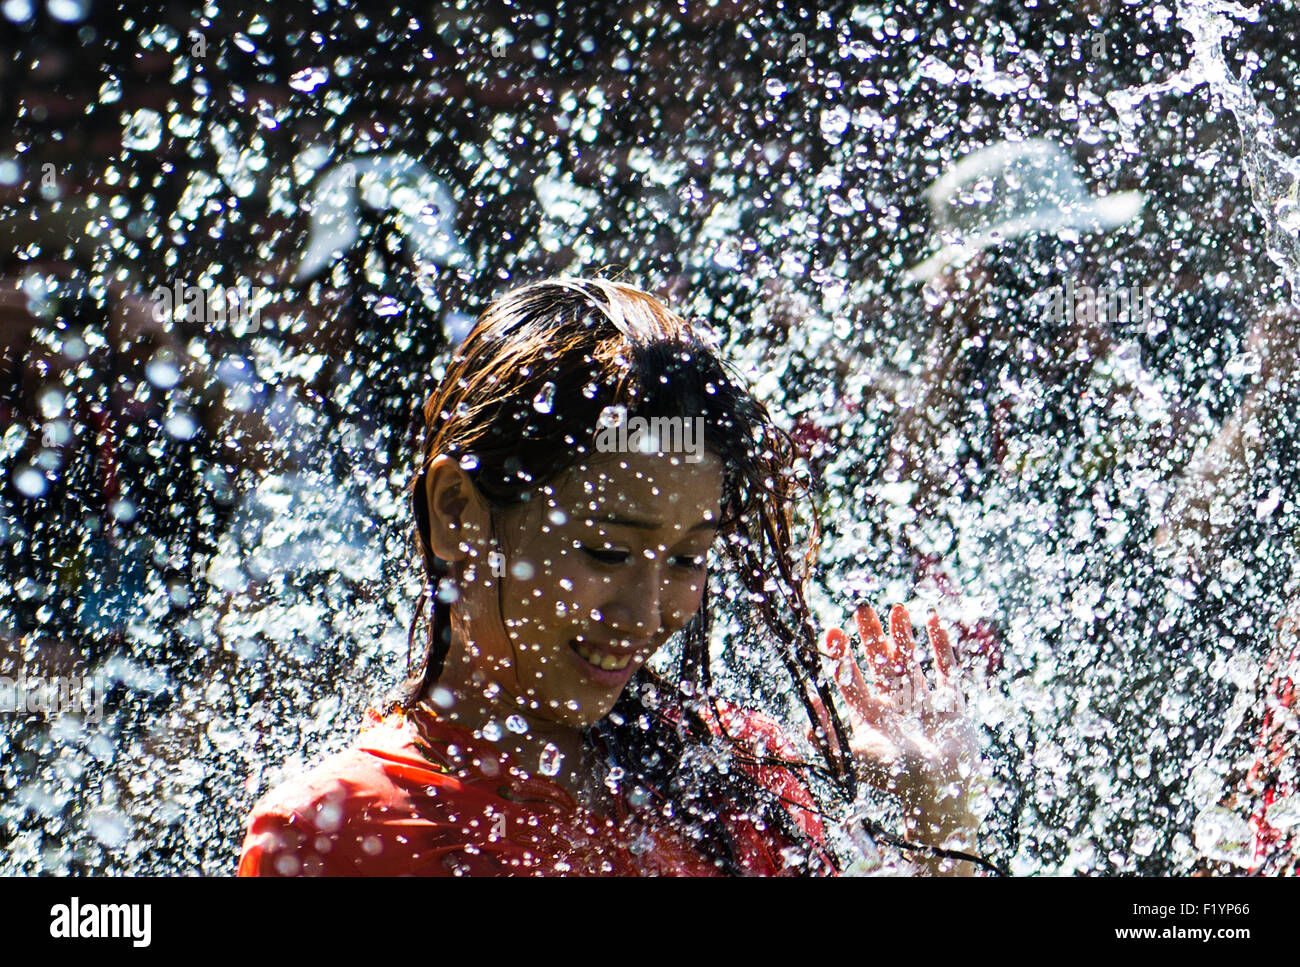 Junge asiatische Modelle mit Wasser bespritzt. Stockfoto